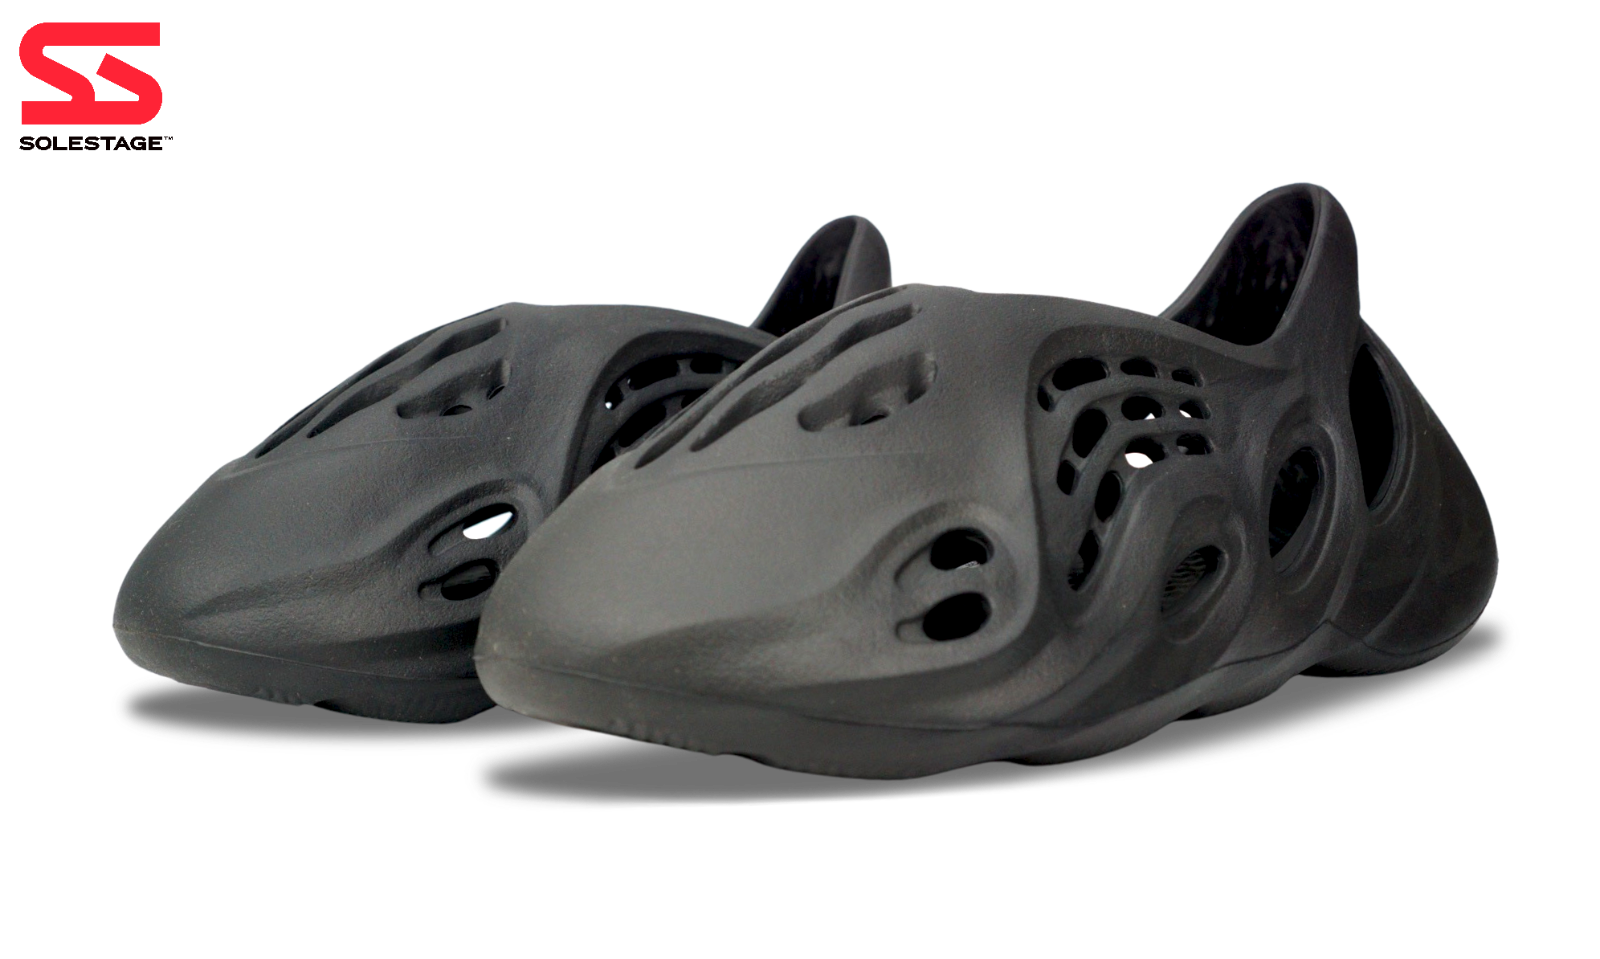 Adidas Yeezy Foam Runner Onyx (HP8739) Men's Size 4-15